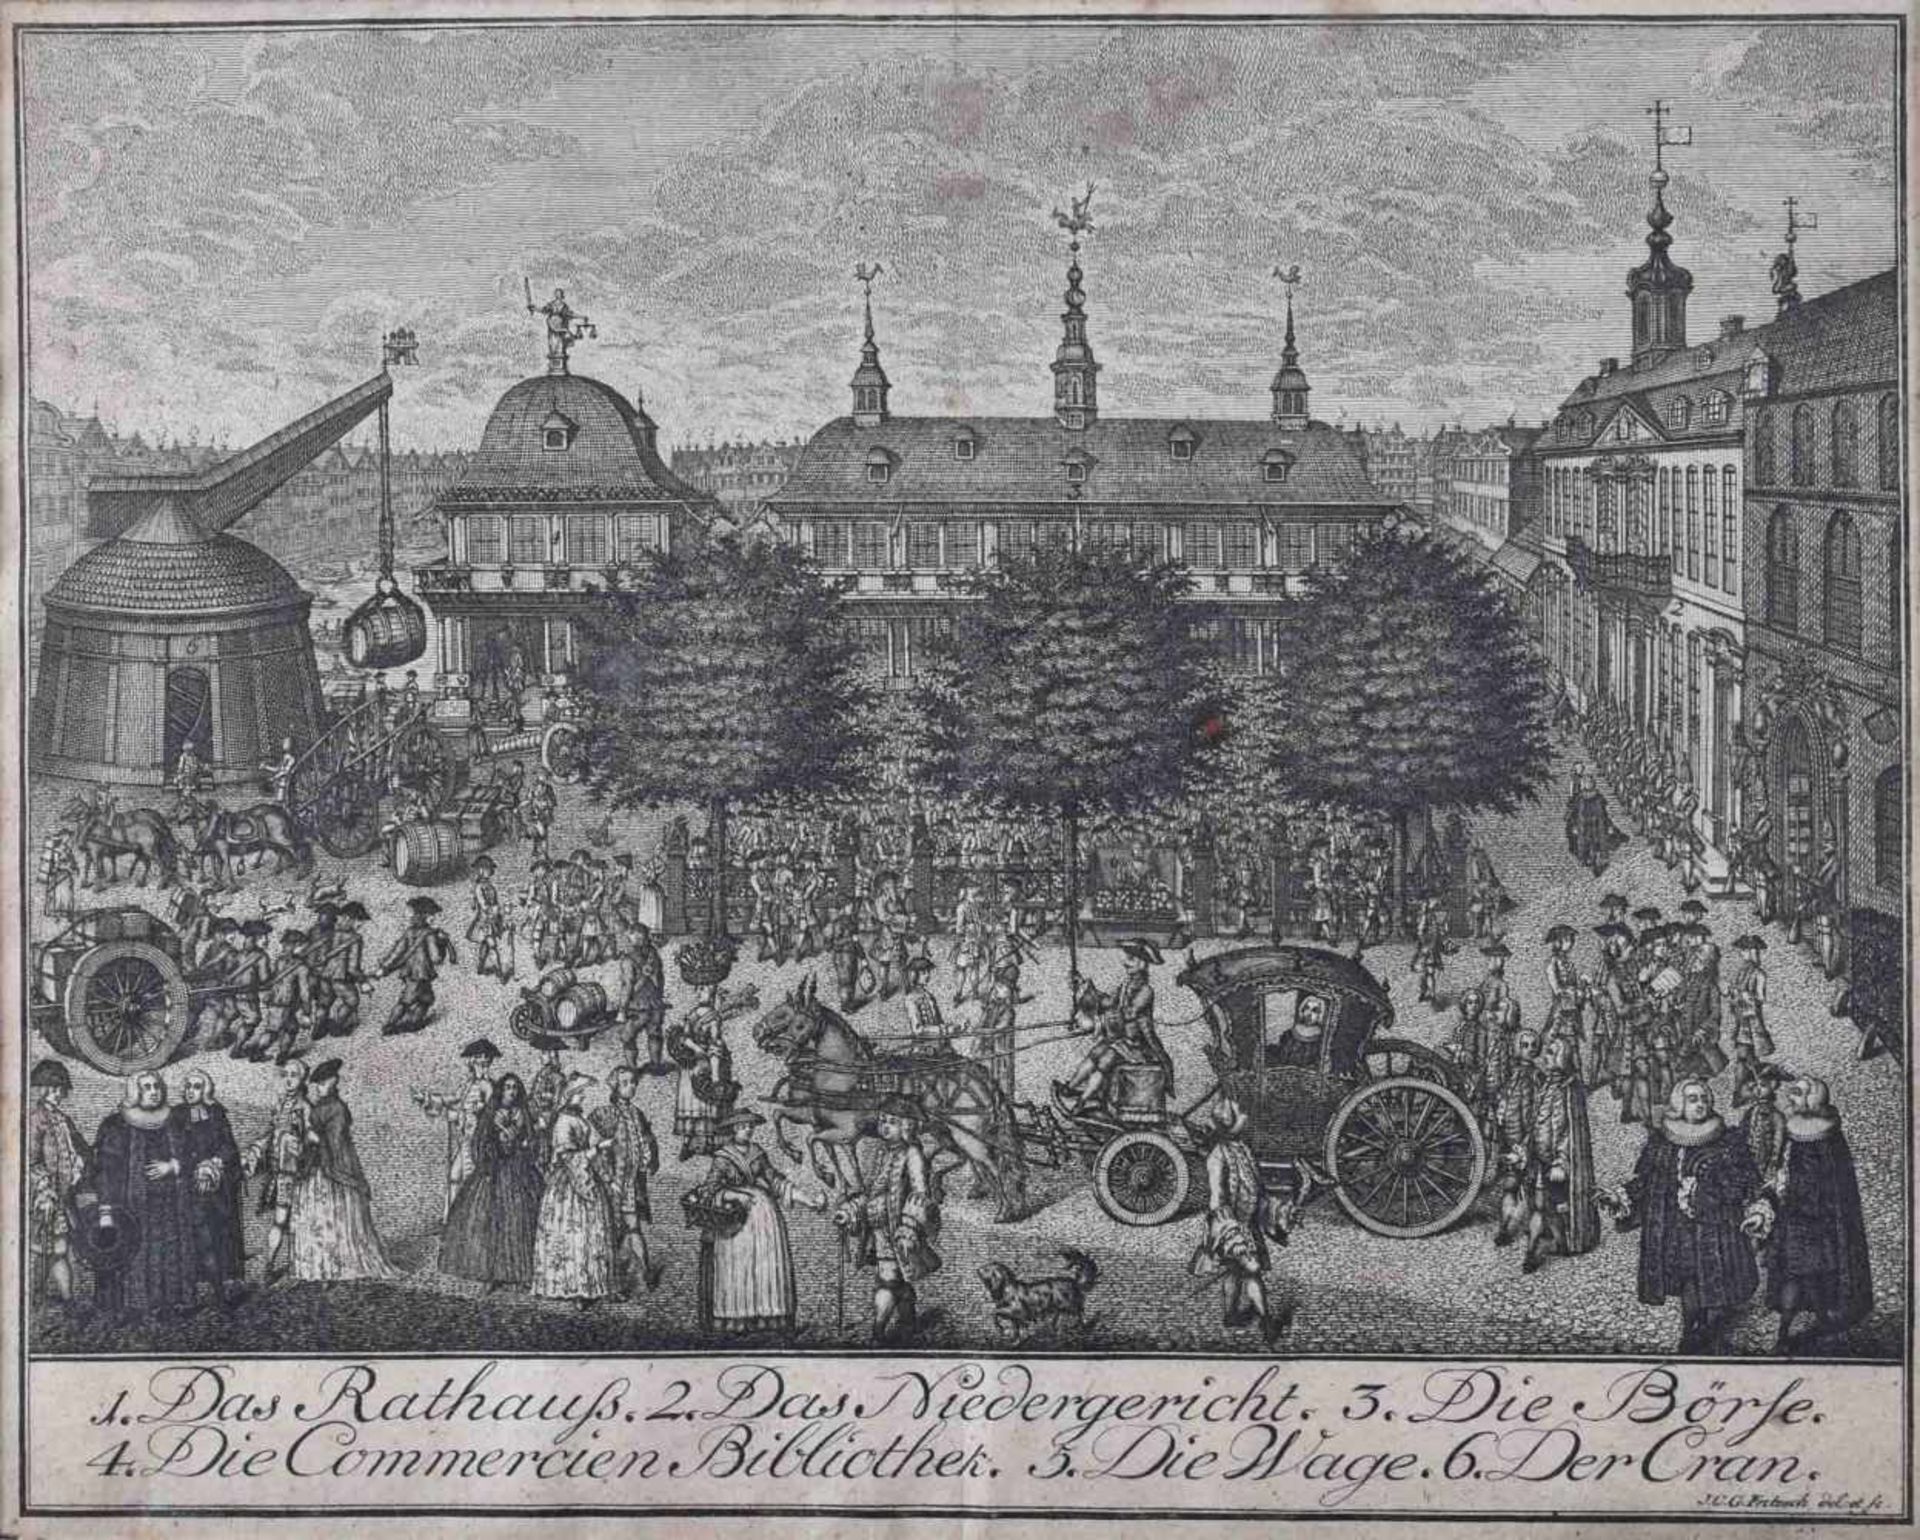 Johann C. Gottfried FRITZSCH (c.1720-1802)"Das Rathaus, das Niedergericht, die Börse......" (ca.